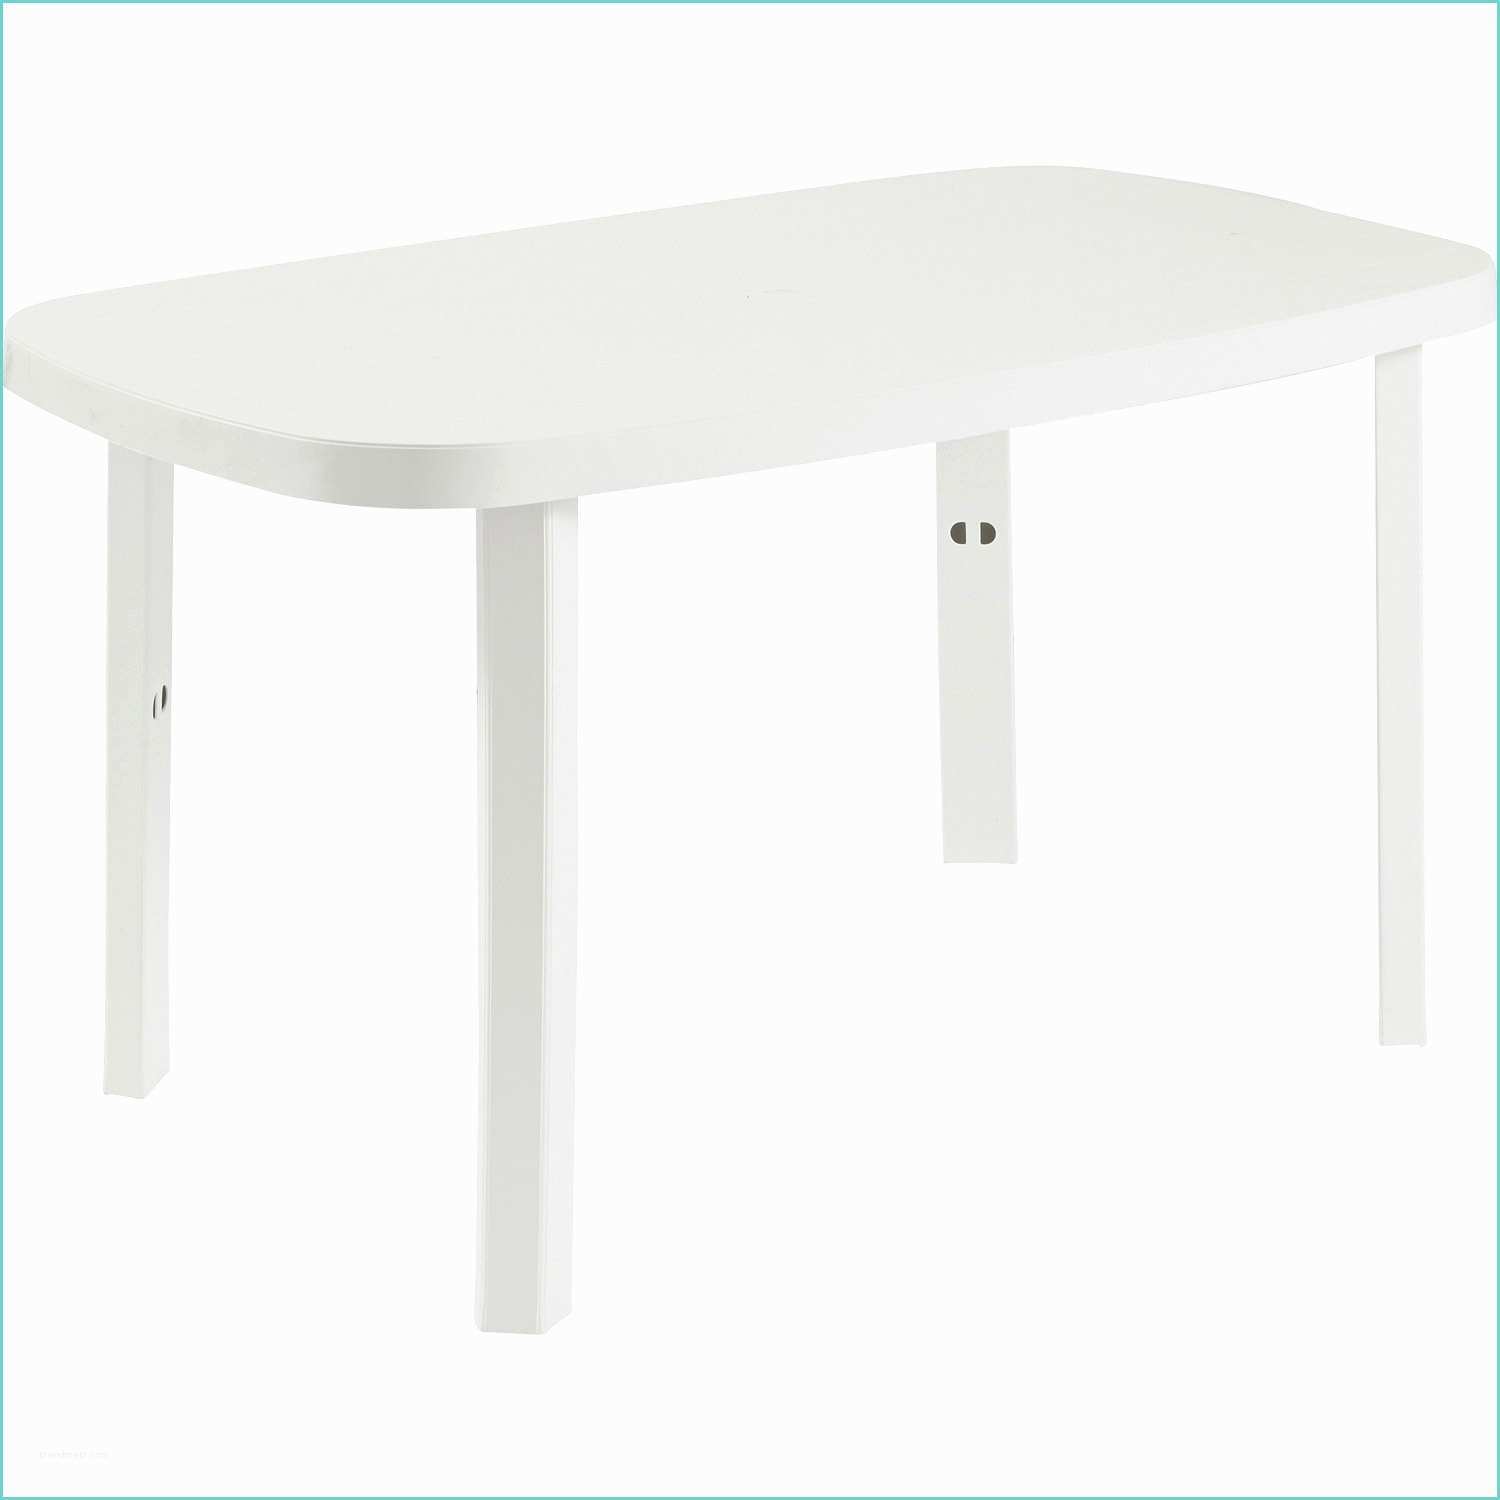 Table De Jardin Grosfillex Leroy Merlin Table Basse De Jardin En Plastique Blanc – Ezooq